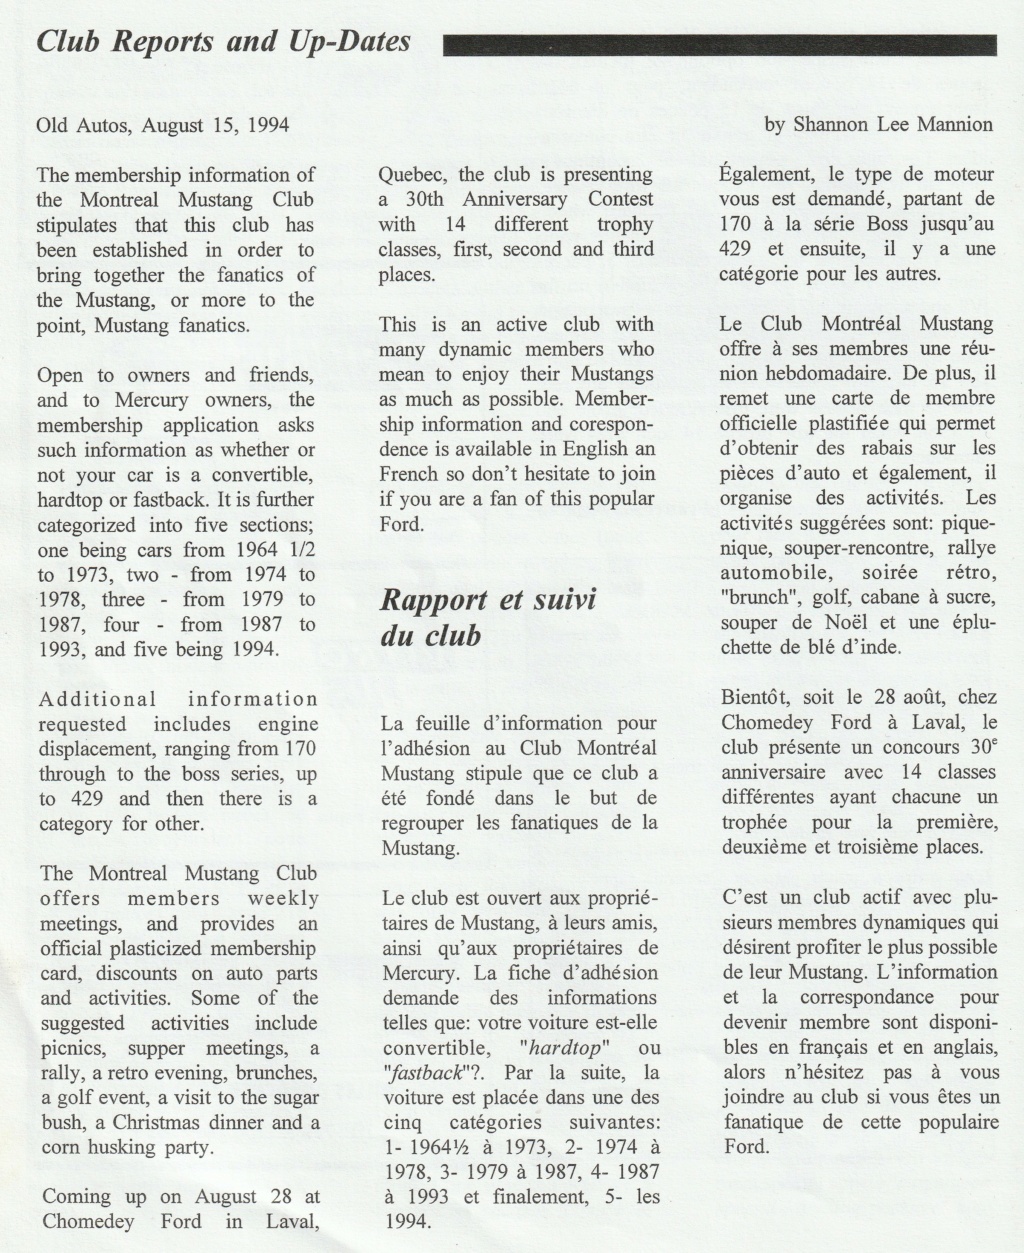 Montréal Mustang dans le temps! 1981 à aujourd'hui (Histoire en photos) - Page 8 Img_2337